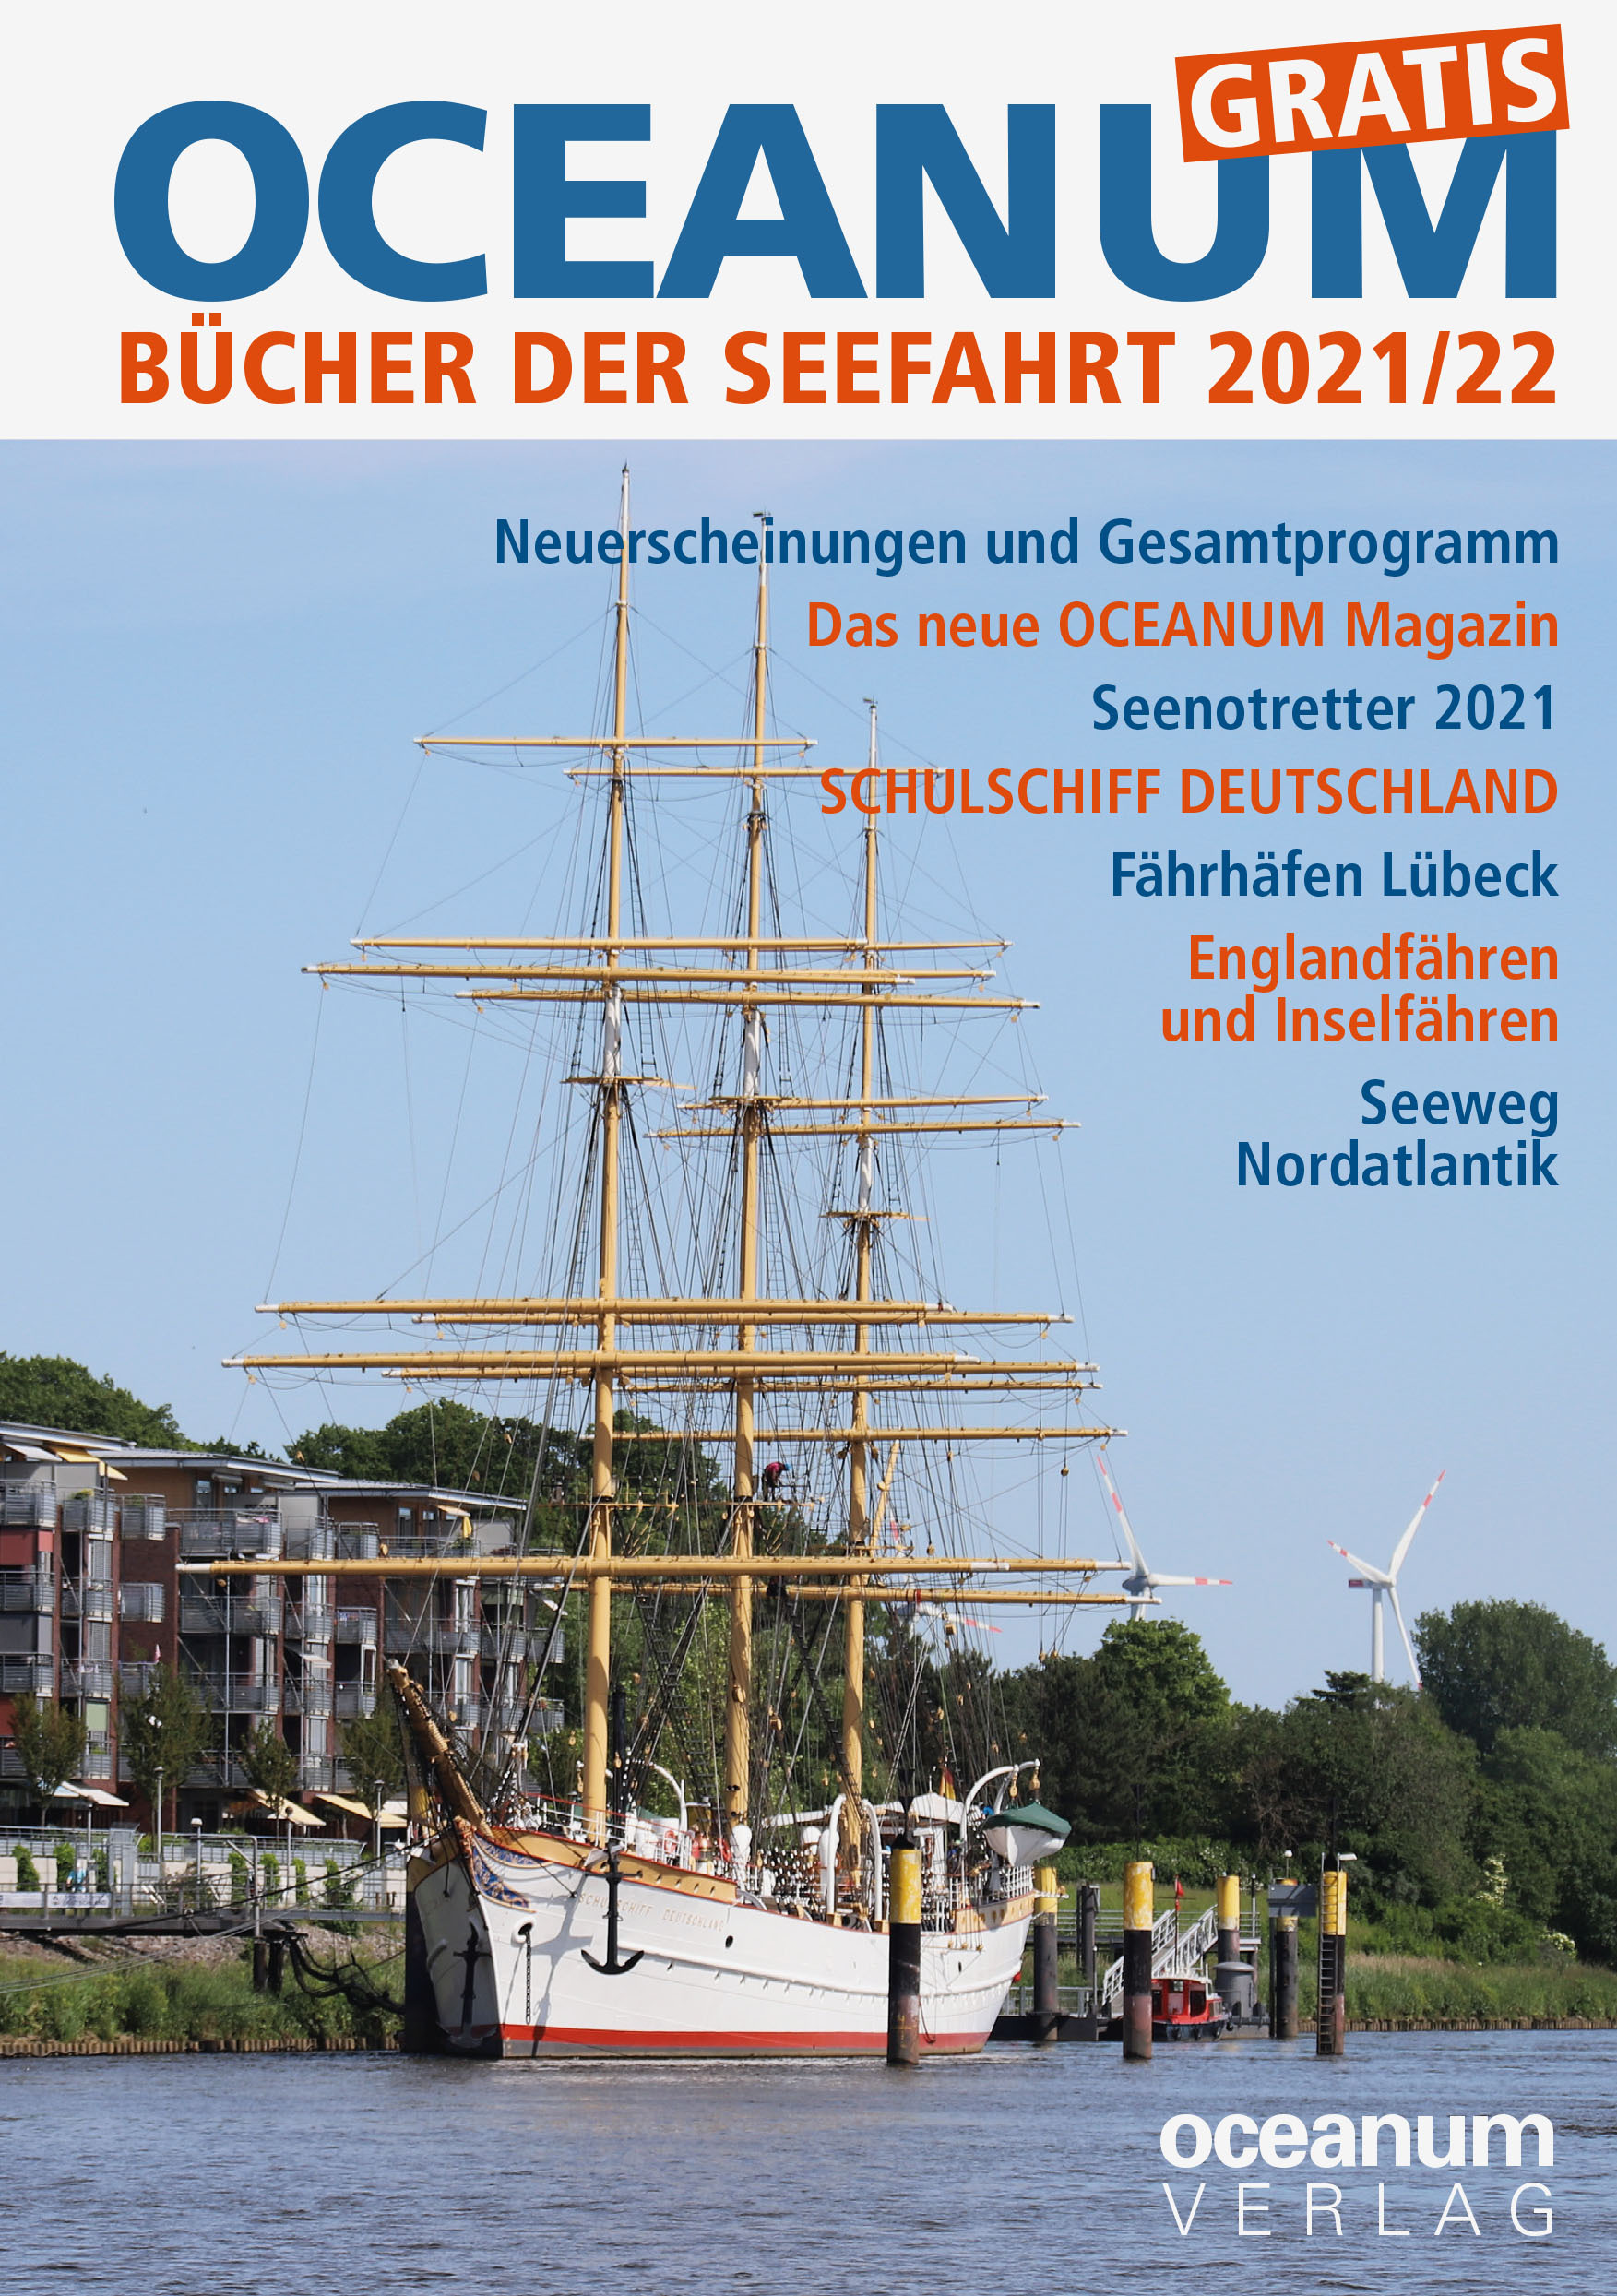 Oceanum_Programm_2021-22